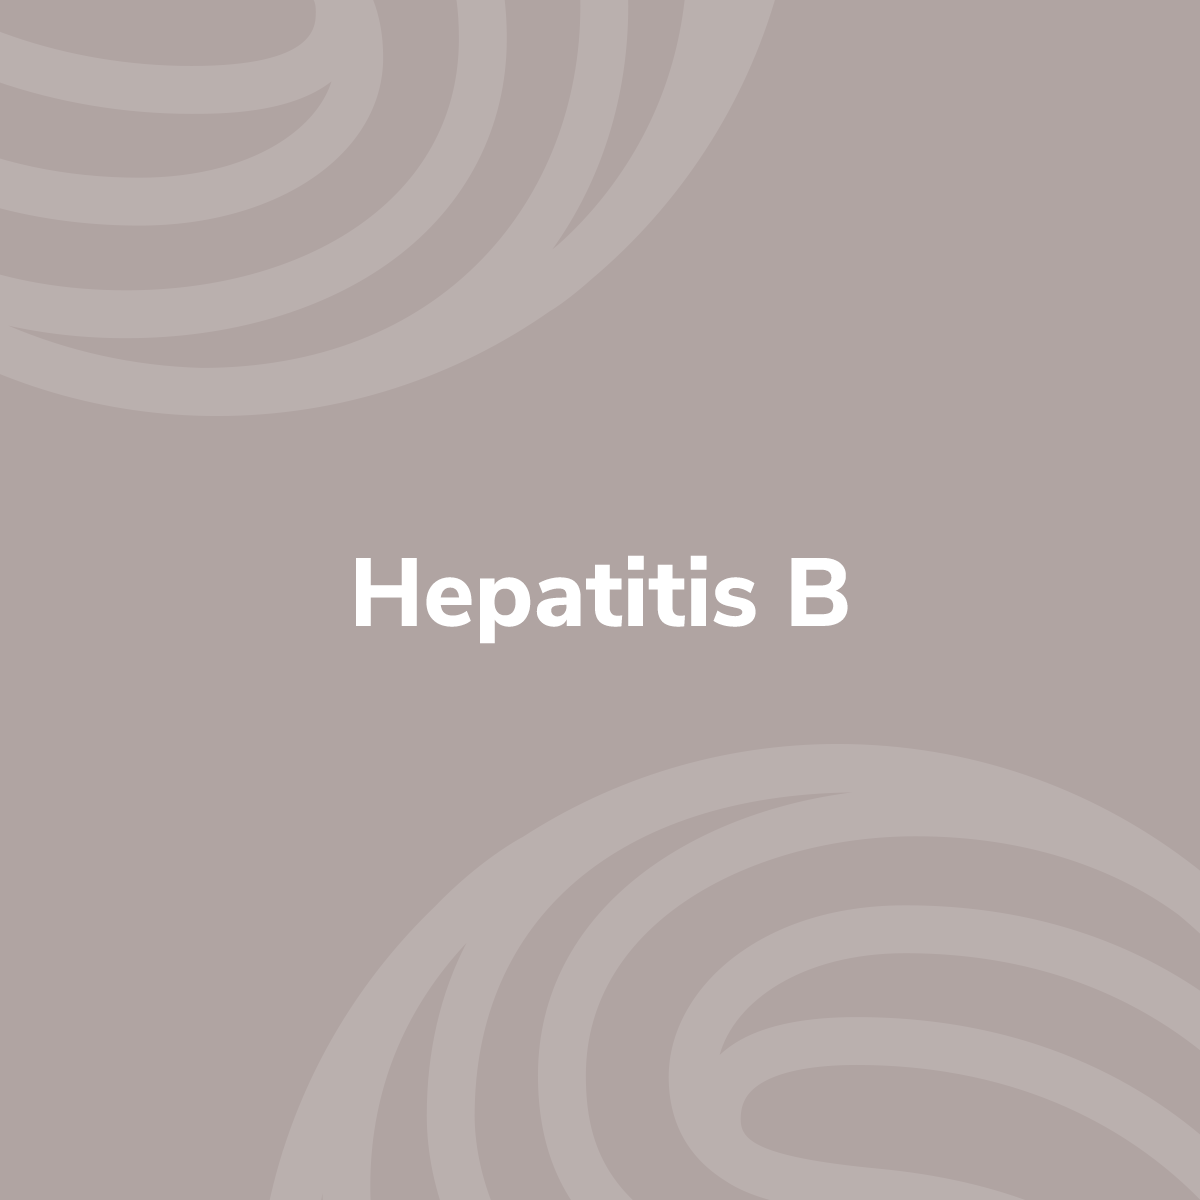 Contra hepatitis B